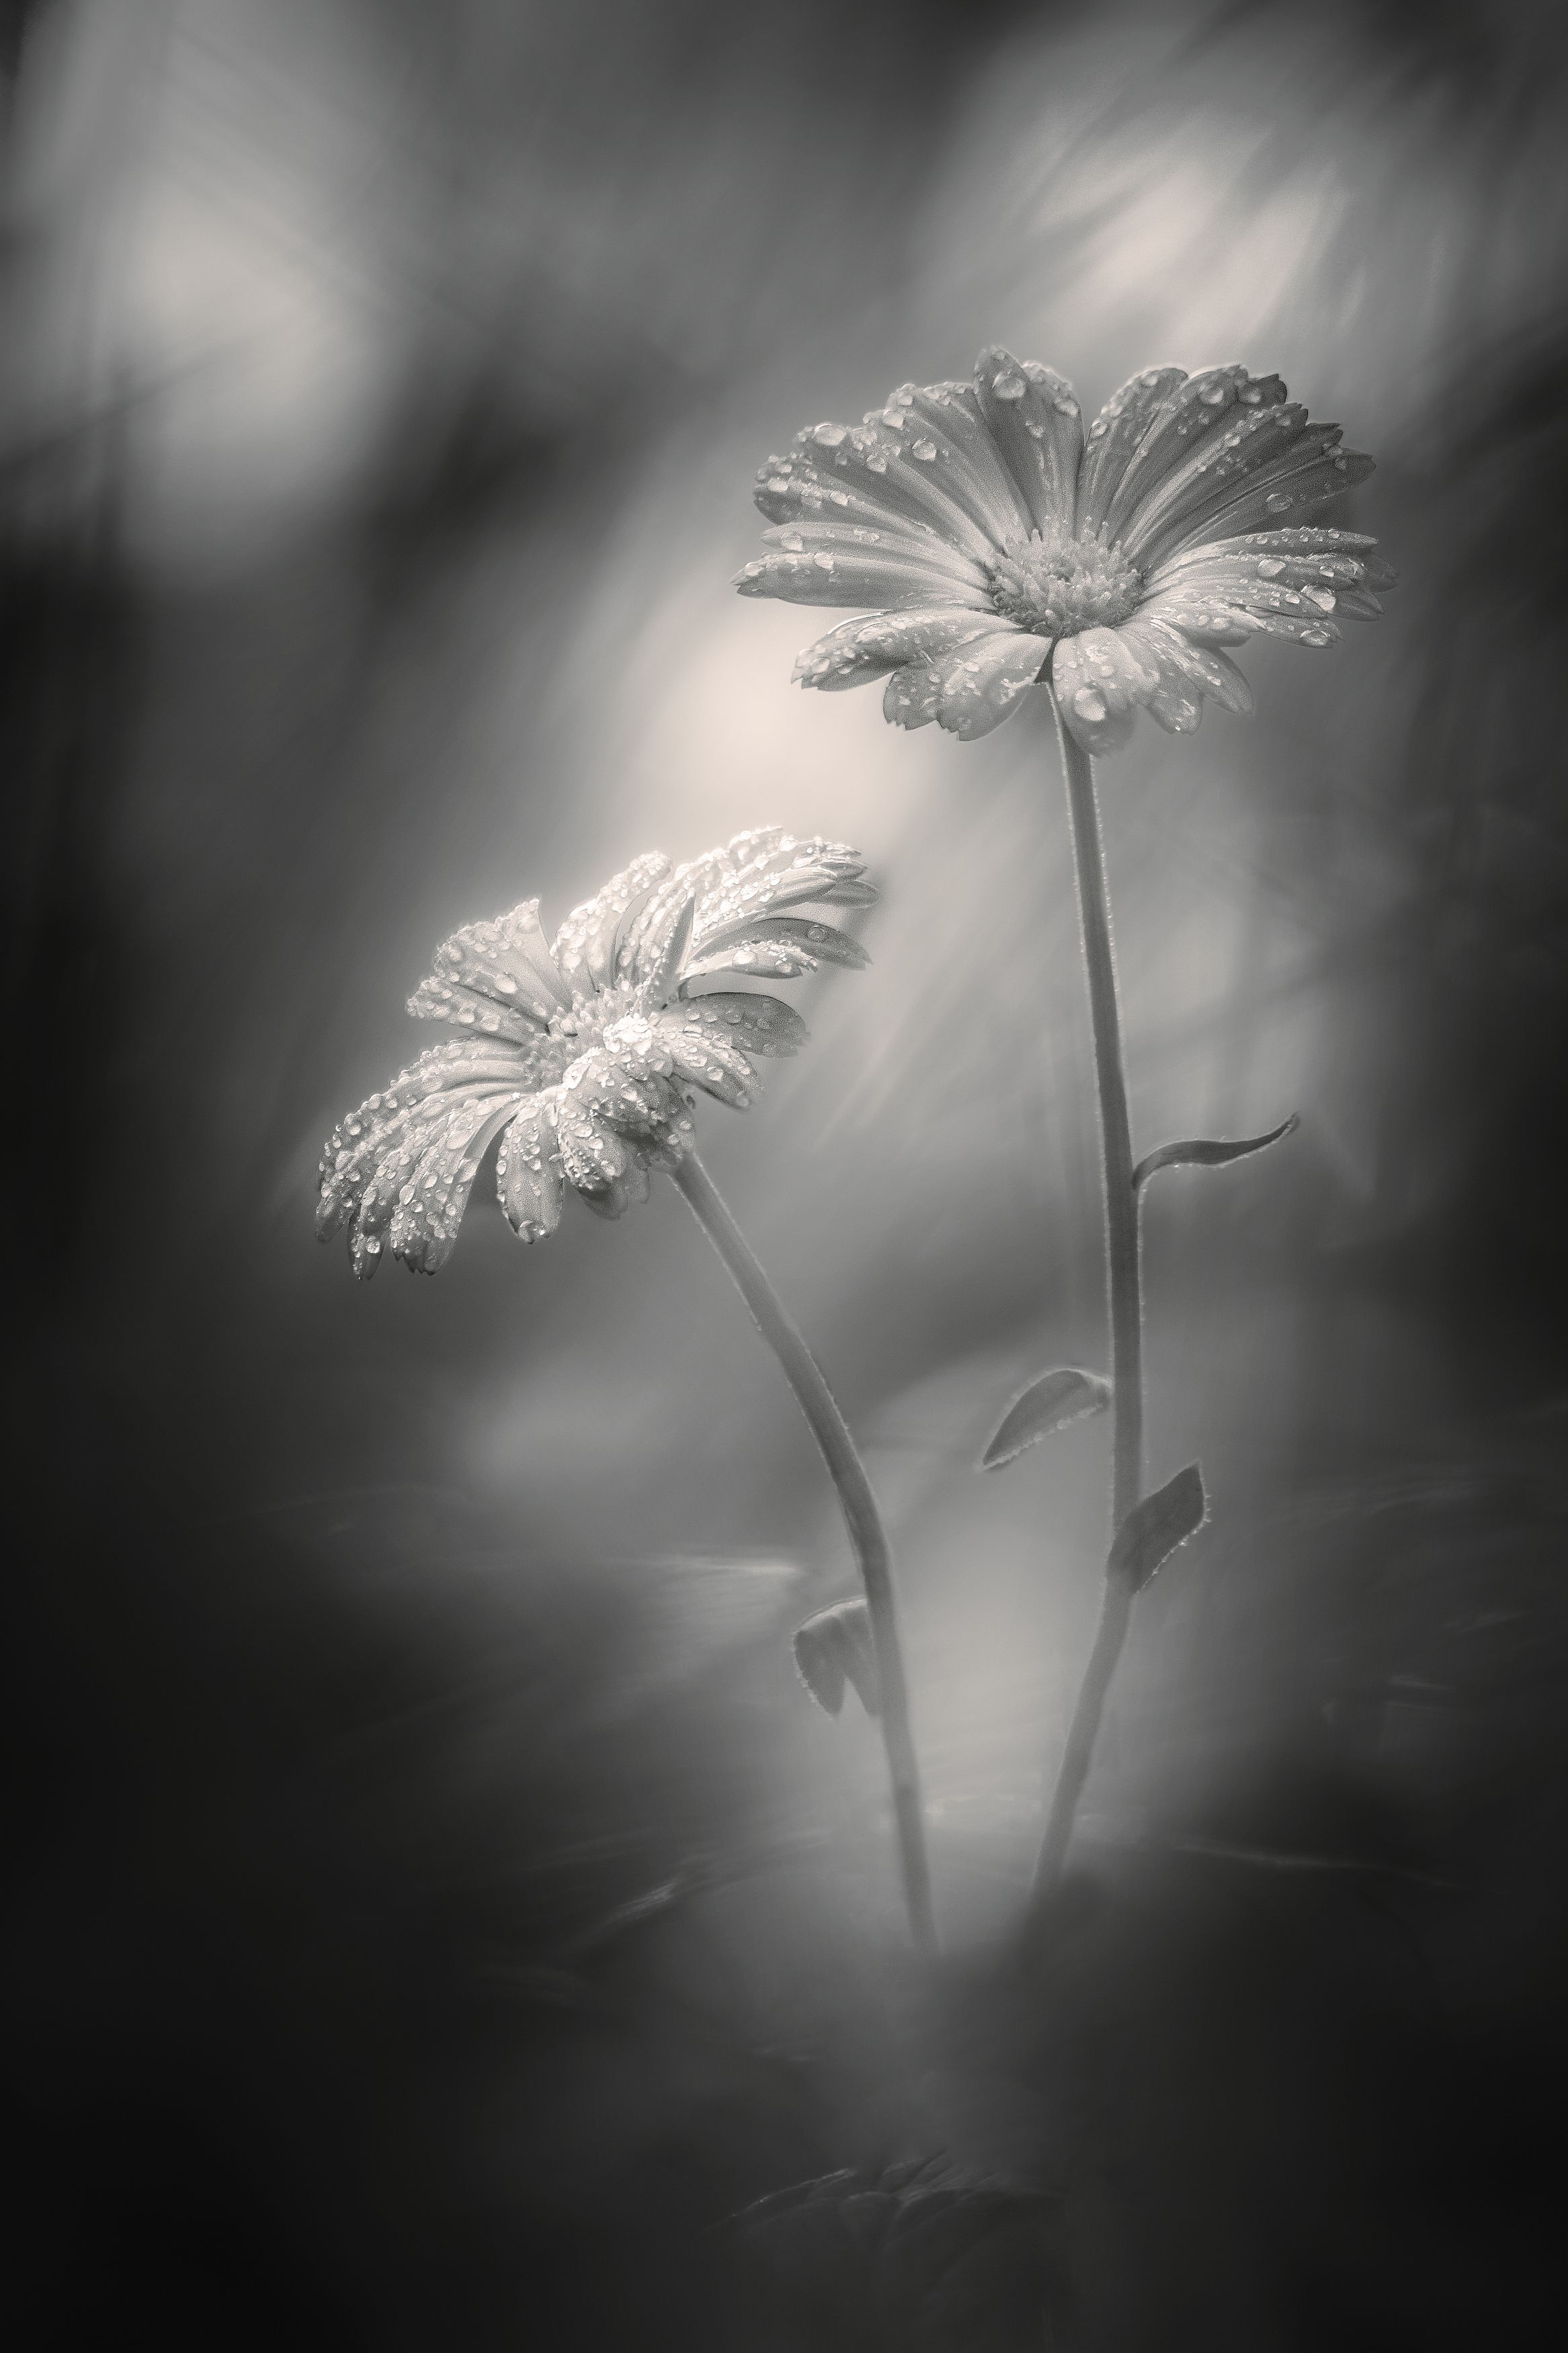 цветы календула свет тень фон боке природа флора капли дождь фотография арт, Еремеев Дмитрий